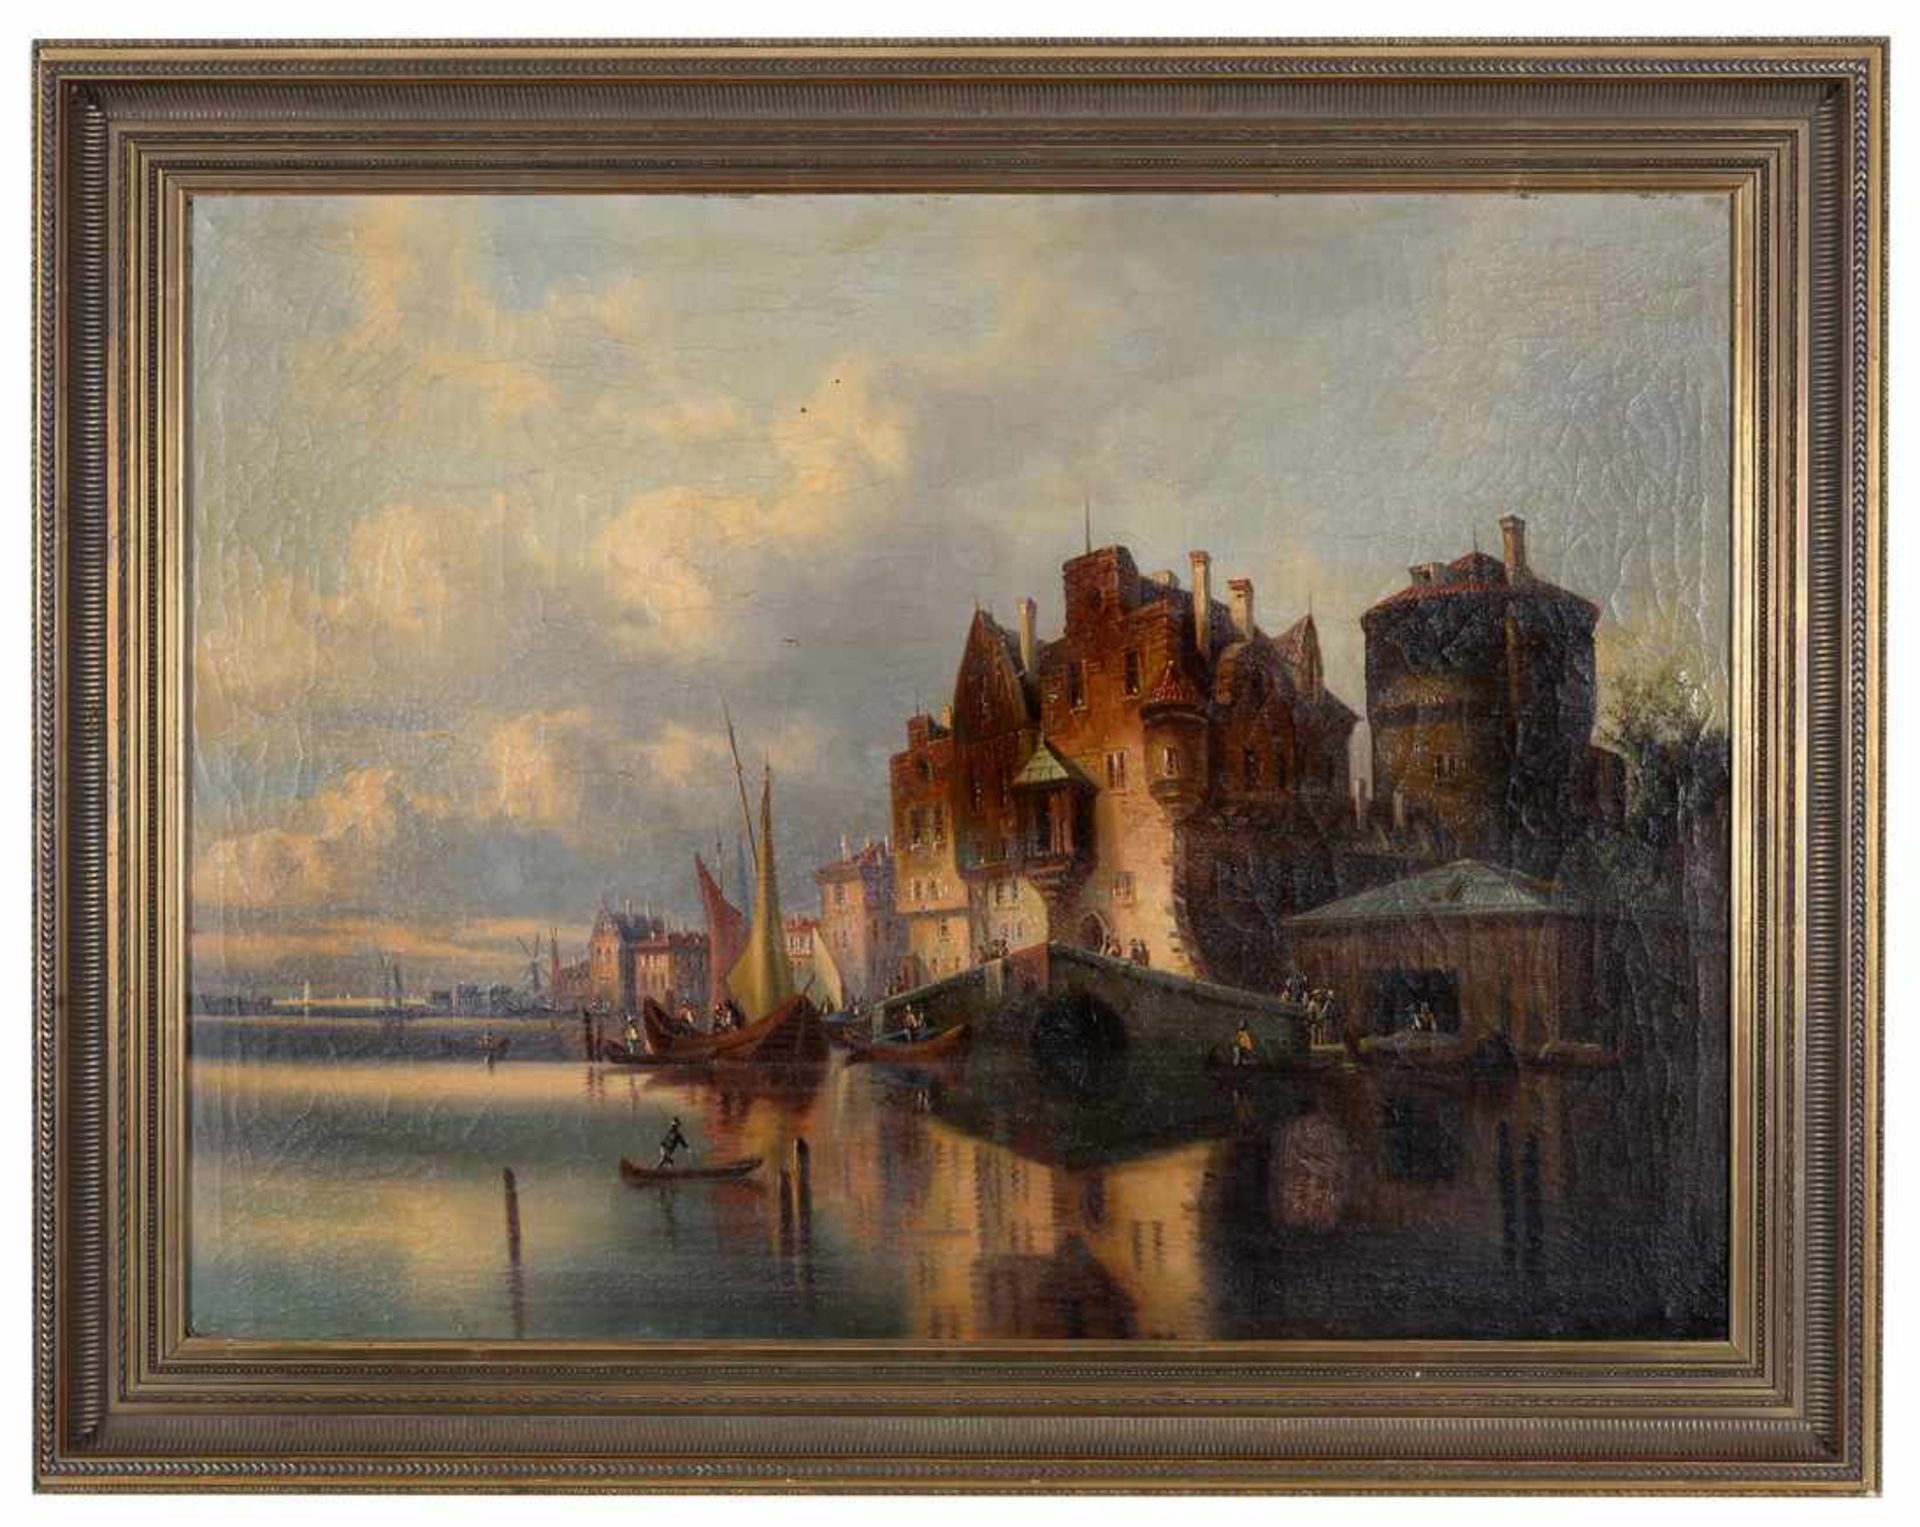 Belebte niederländische Hafenpassage mit weitläufiger Silhouette. T.C. Gessnitzer,Pseudonym des Karl